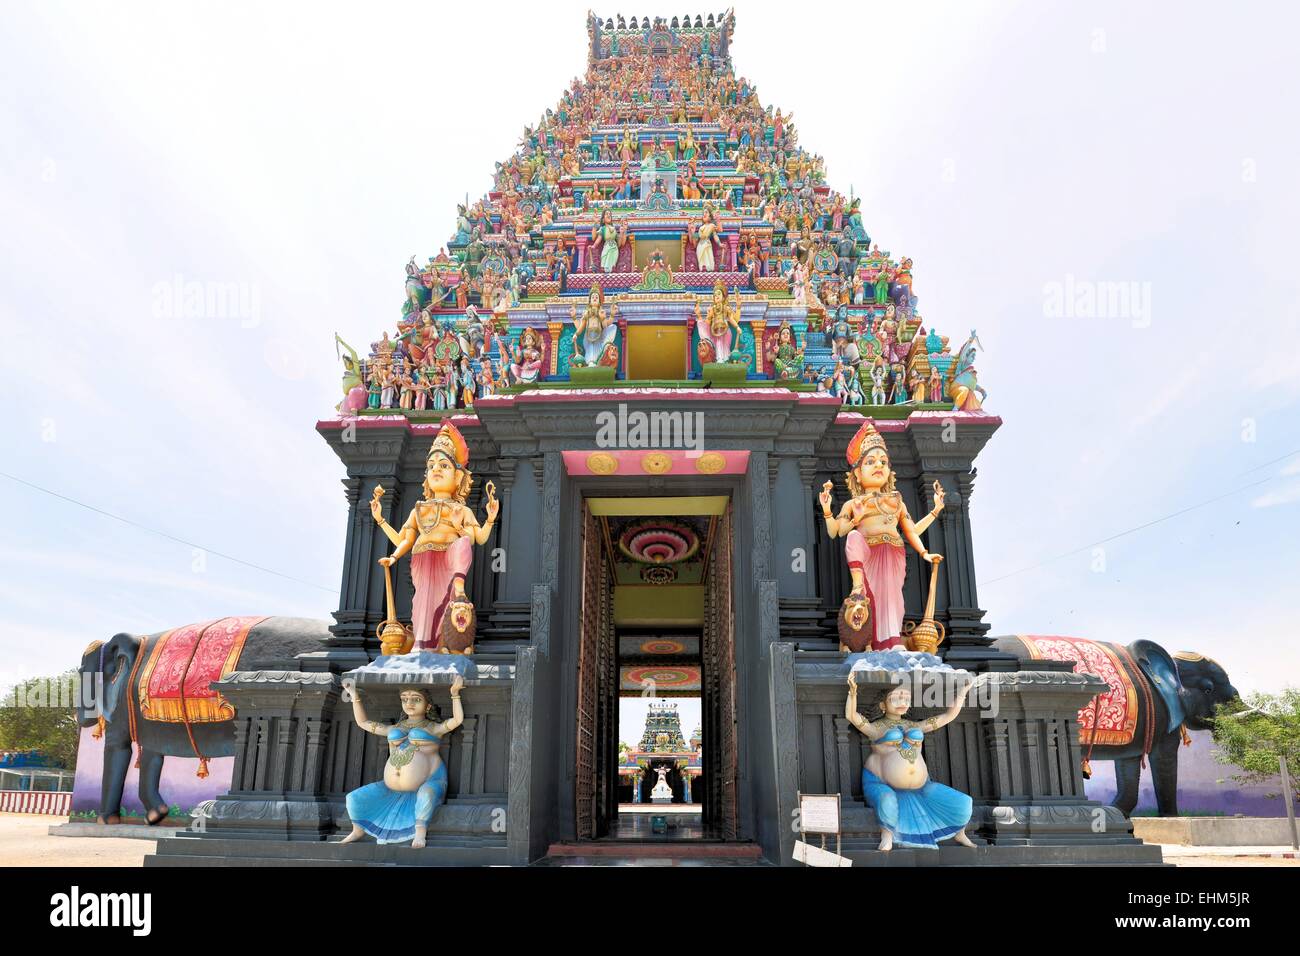 Elephant figures on island Hindu temple, Sri Lanka Stock Photo